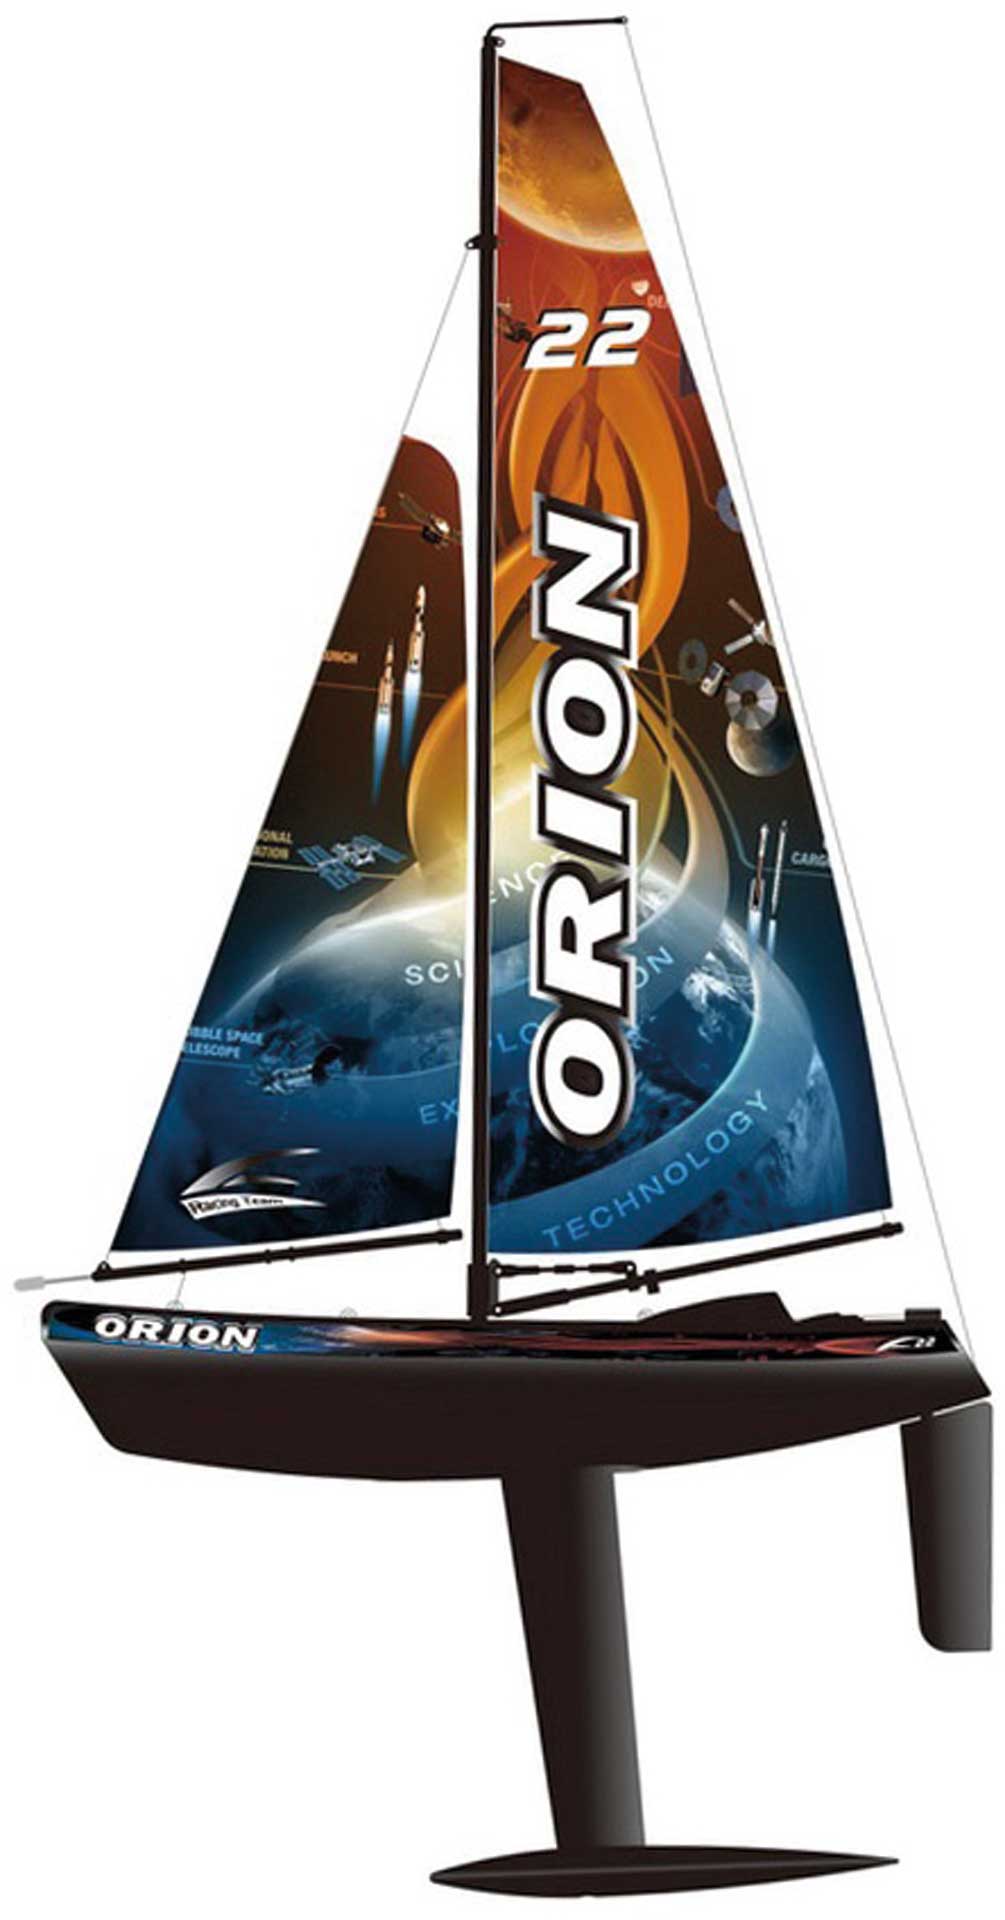 JOYSWAY Orion V2 Segelboot 2.4G RTR